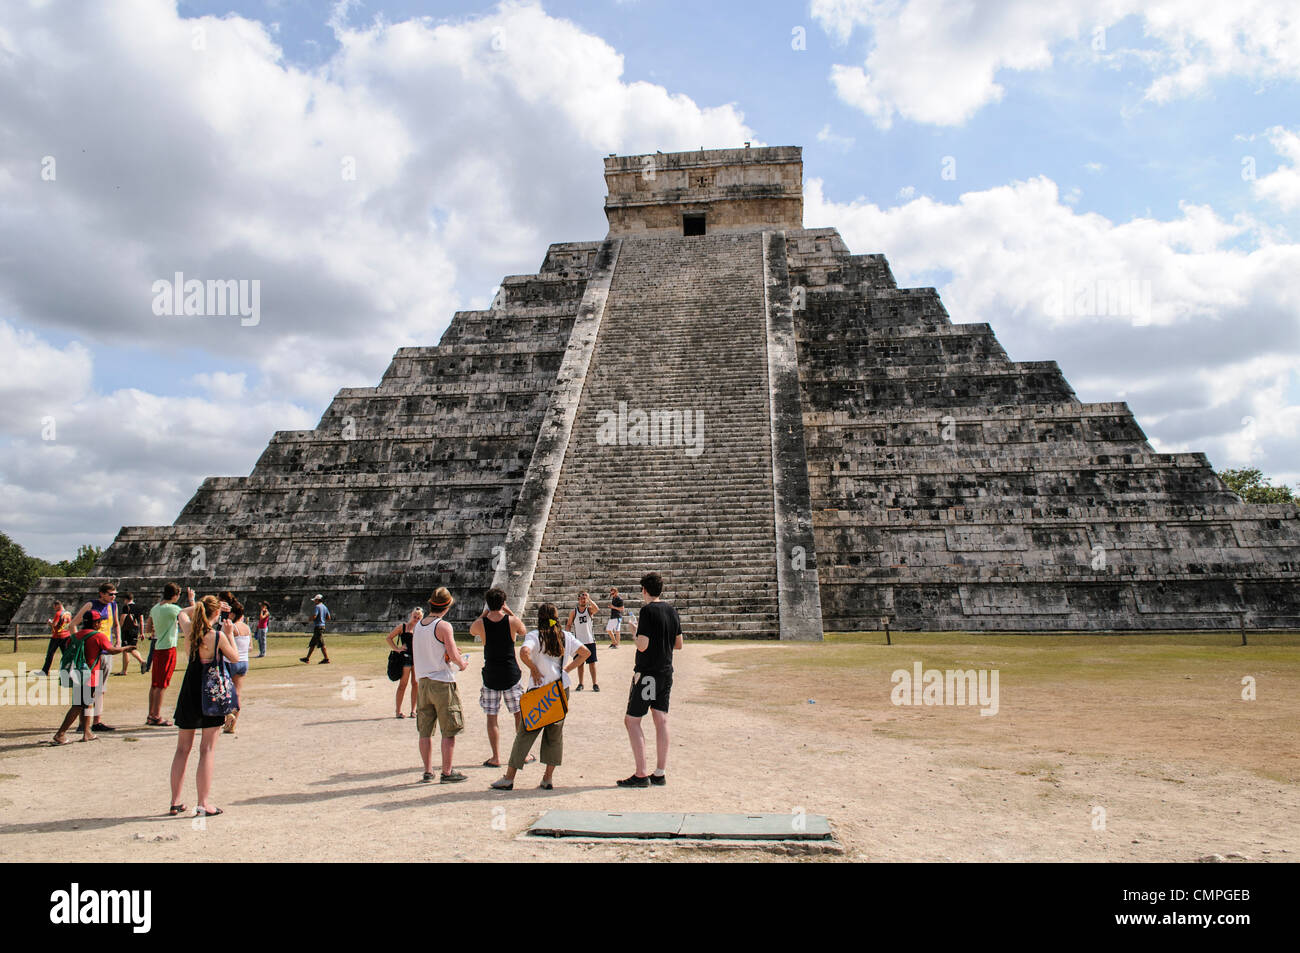 CHICHEN ITZA, Mexique - Un groupe de touristes qui visitent le temple de Kukulkan (El Castillo) à la Zone archéologique de Chichen Itza, les ruines d'une importante ville de la civilisation Maya au coeur de la péninsule du Yucatan au Mexique. Banque D'Images